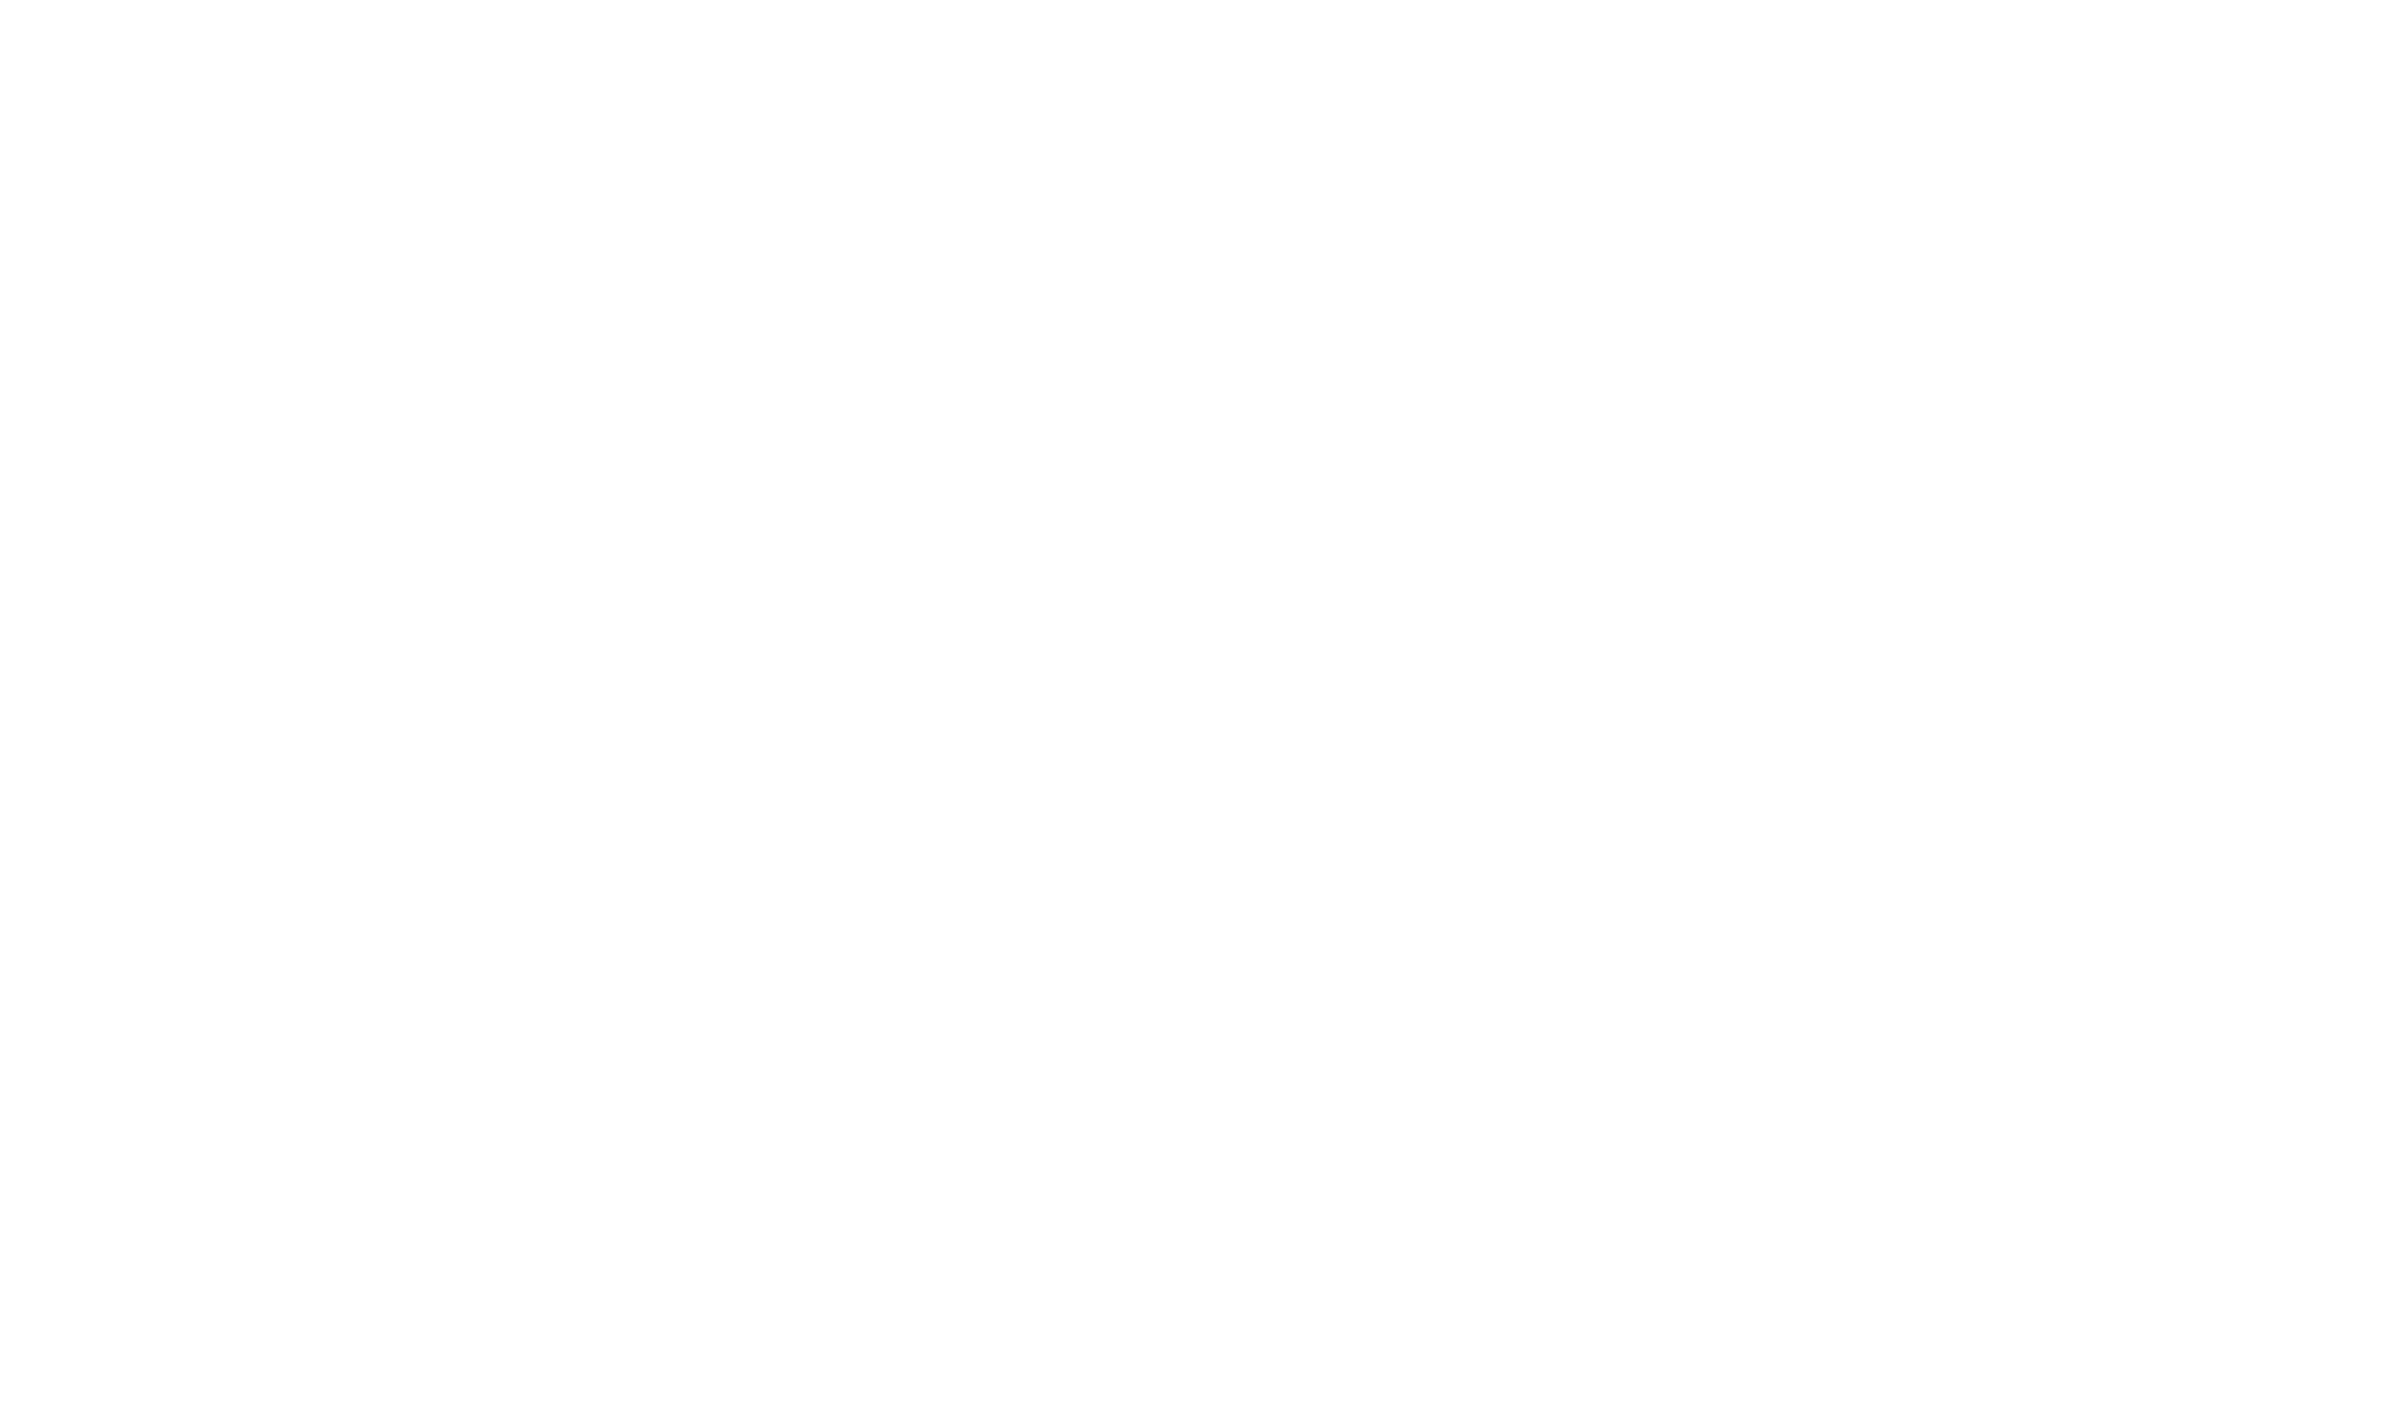 Pingan Logo - Ping an Logo PNG Transparent & SVG Vector